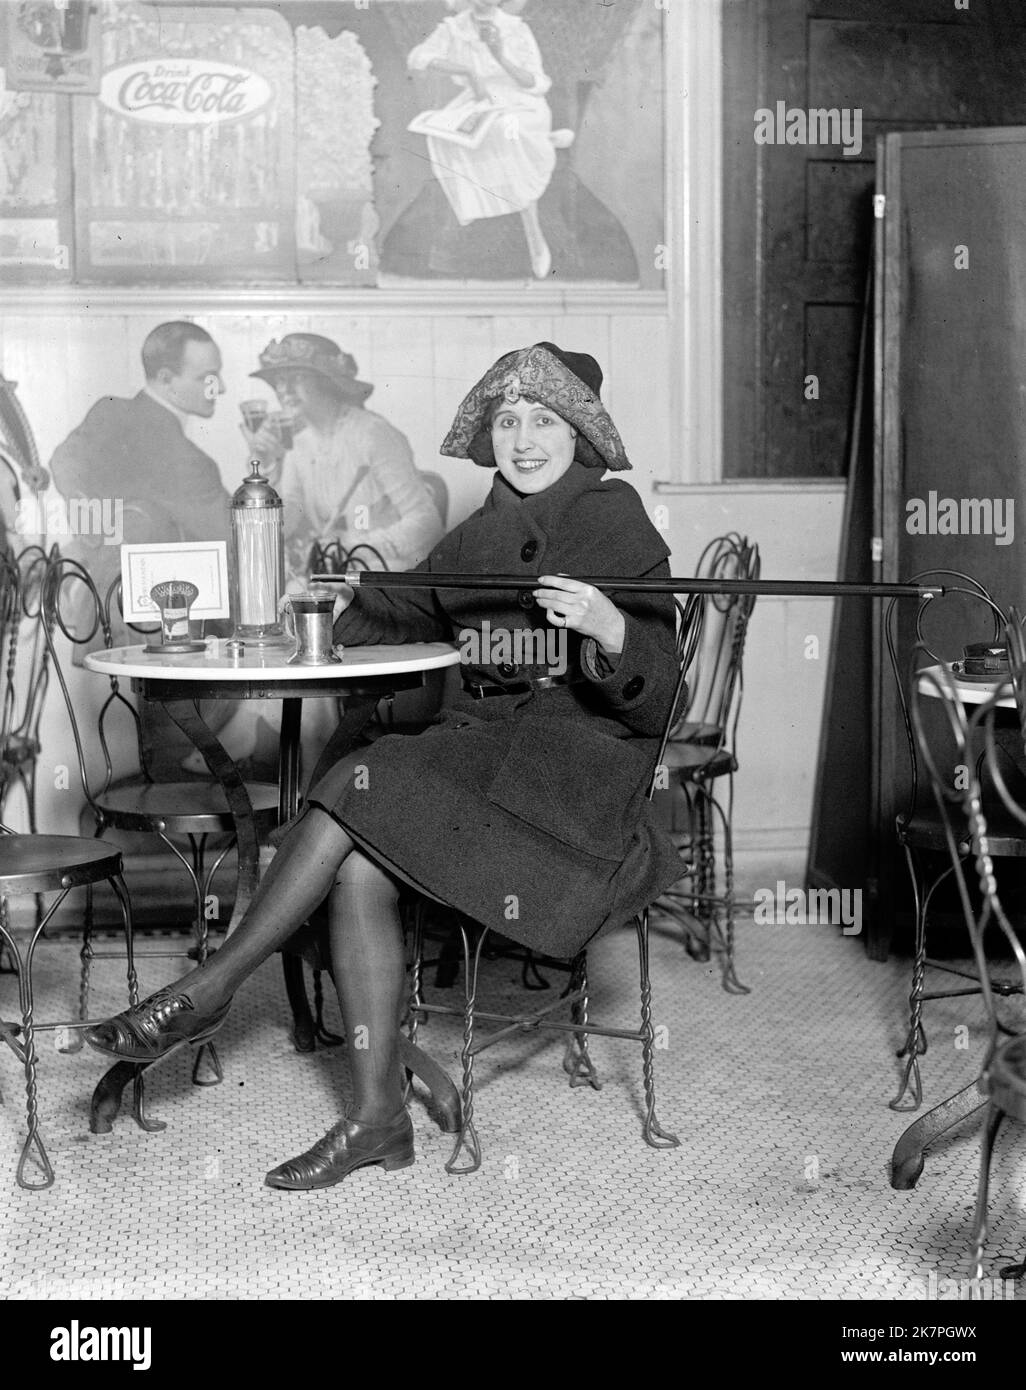 Une femme assise à une table de soda est de verser de l'alcool dans une tasse d'une canne, pendant la prohibition; avec une grande publicité Coca-Cola sur le mur, l'Amérique Banque D'Images